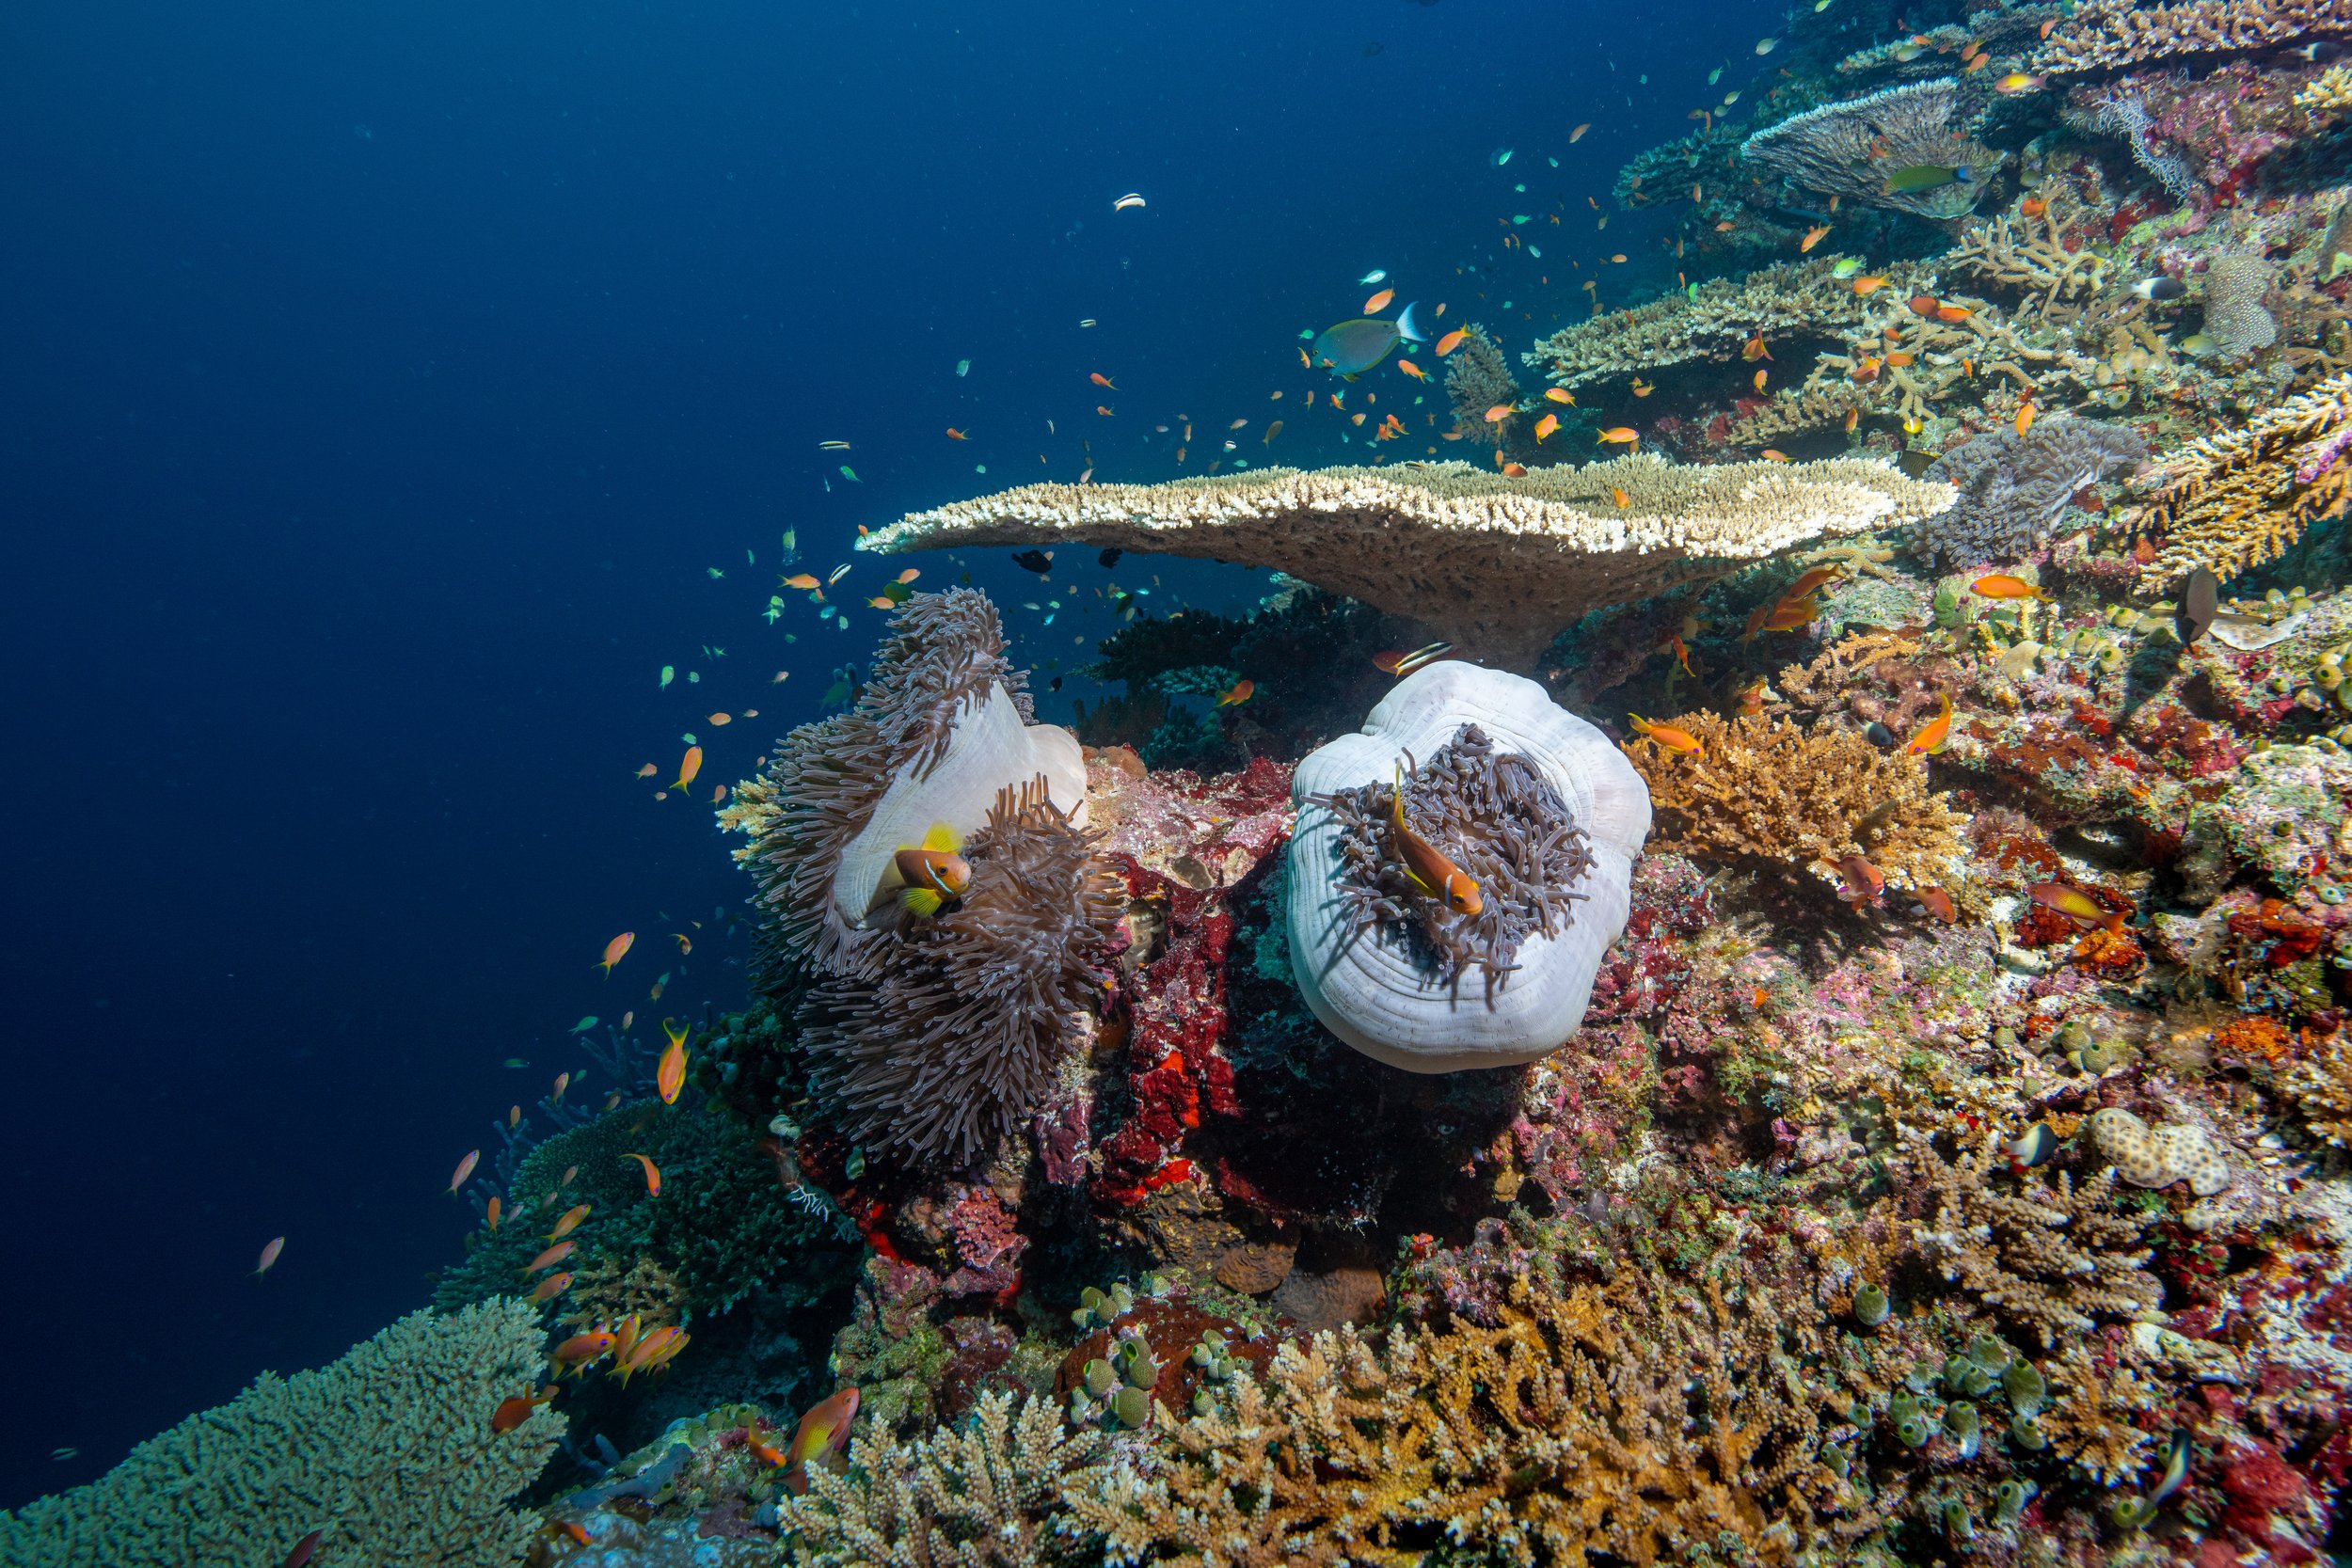   Maldives,   2022 -  Anemonefish among various corals  